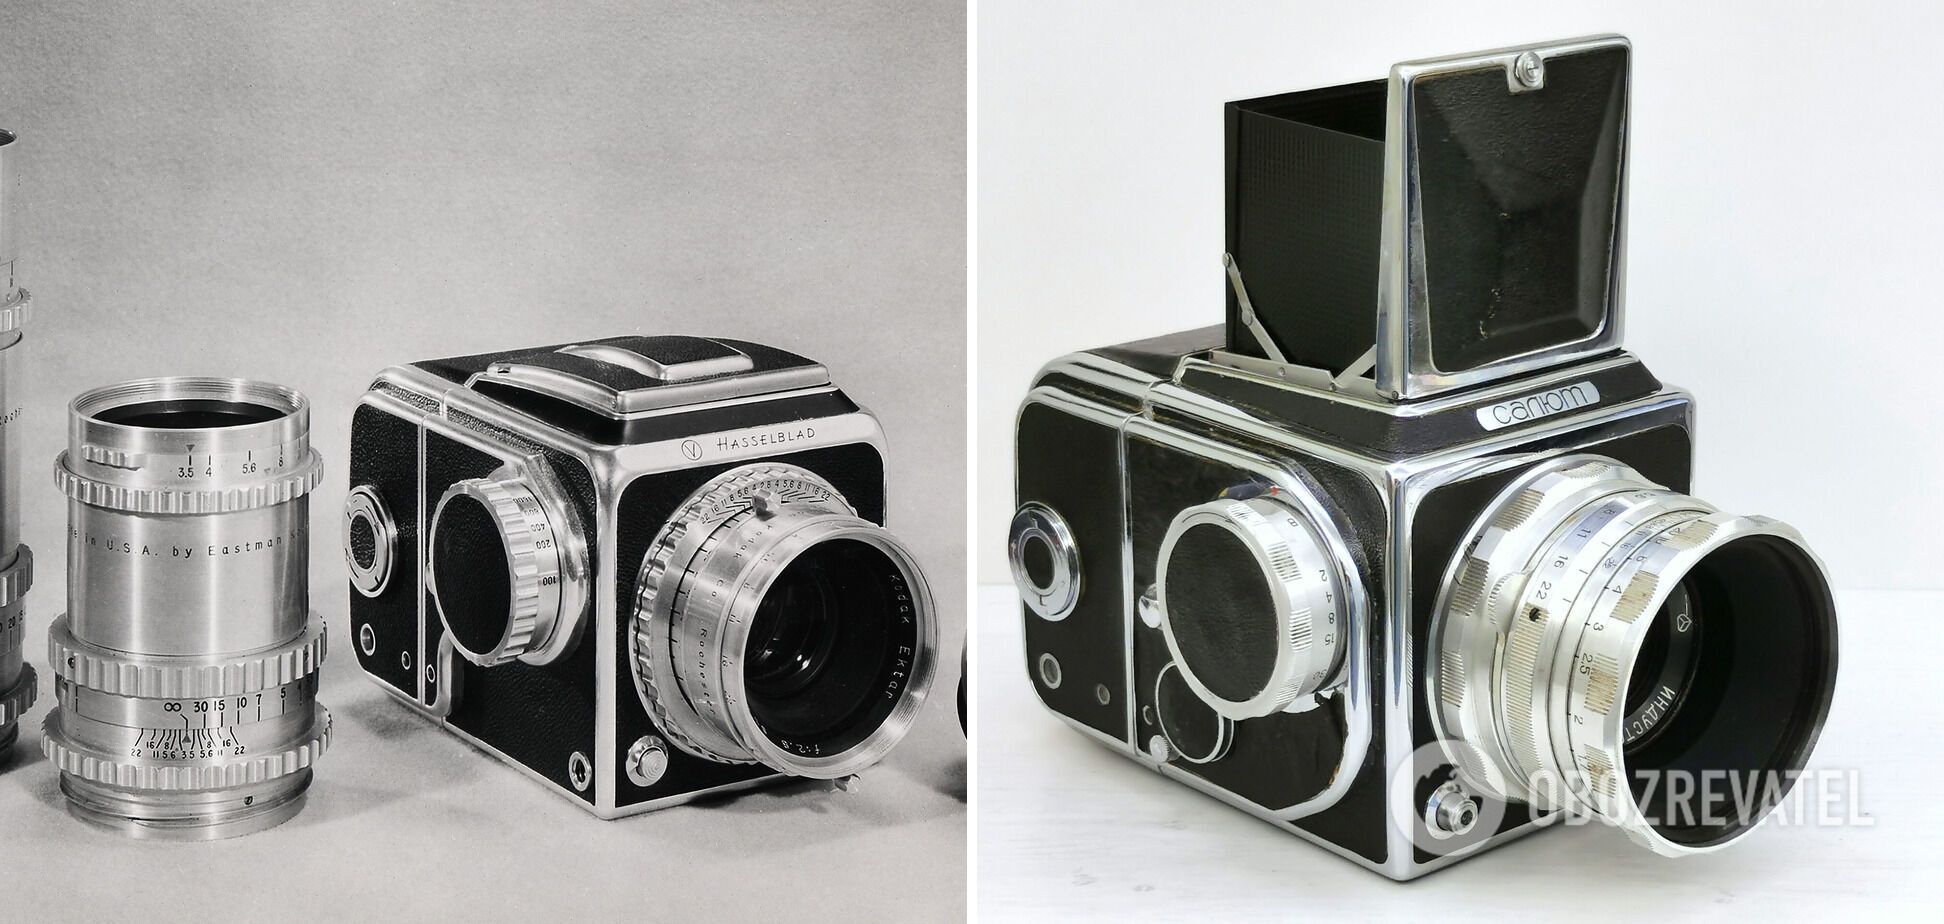 Слева – фотоаппарат "Hasselblad 1600f", а справа – "Салют".